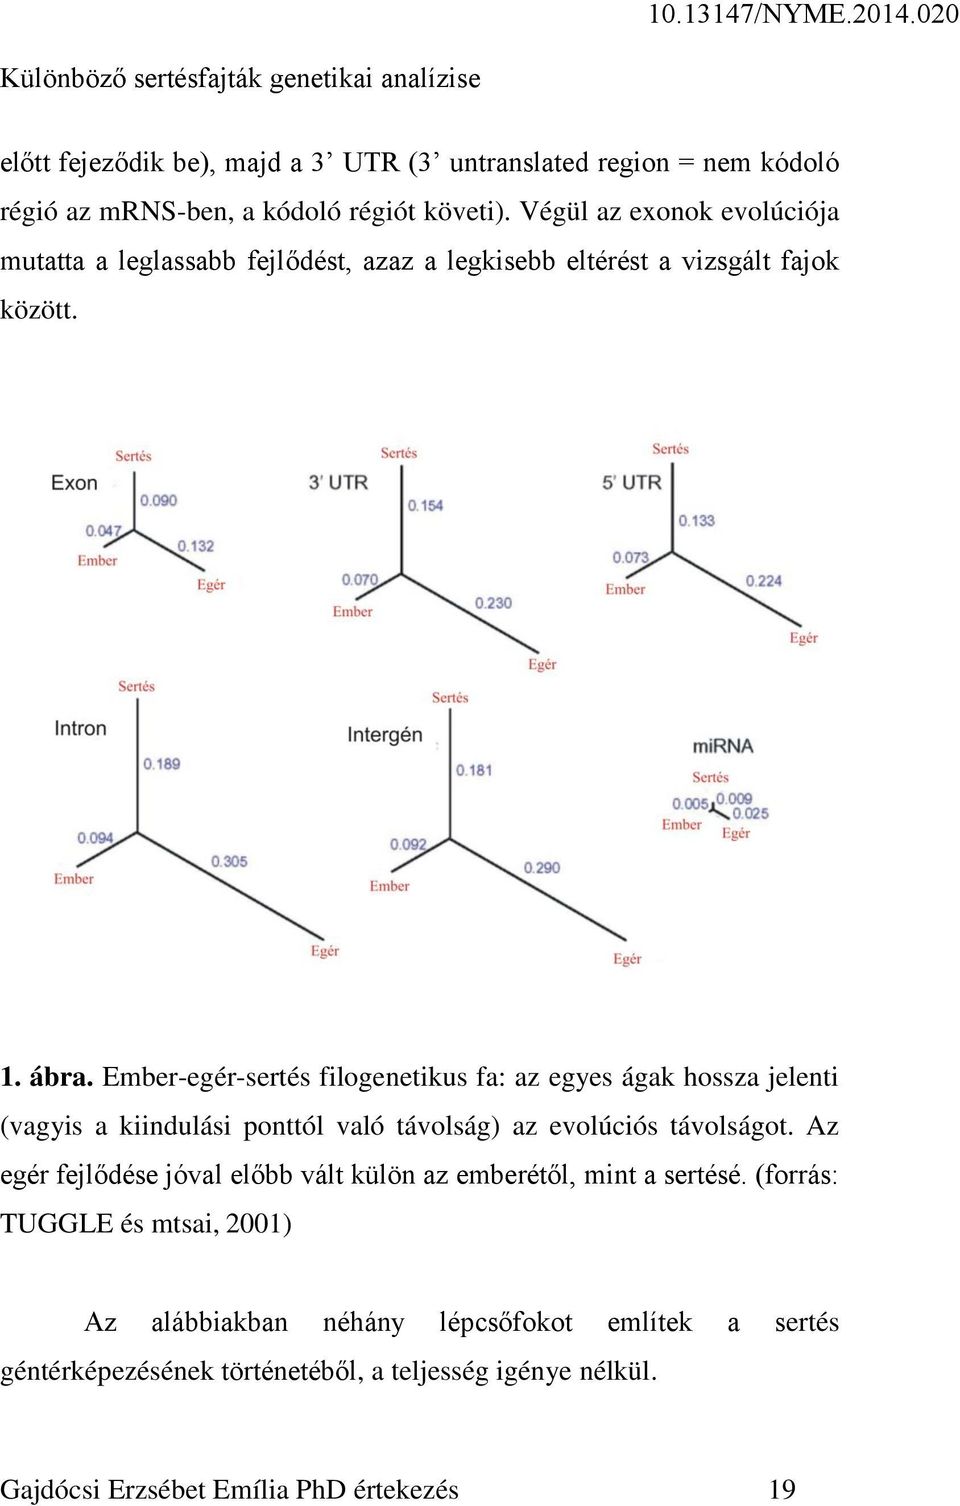 Ember-egér-sertés filogenetikus fa: az egyes ágak hossza jelenti (vagyis a kiindulási ponttól való távolság) az evolúciós távolságot.